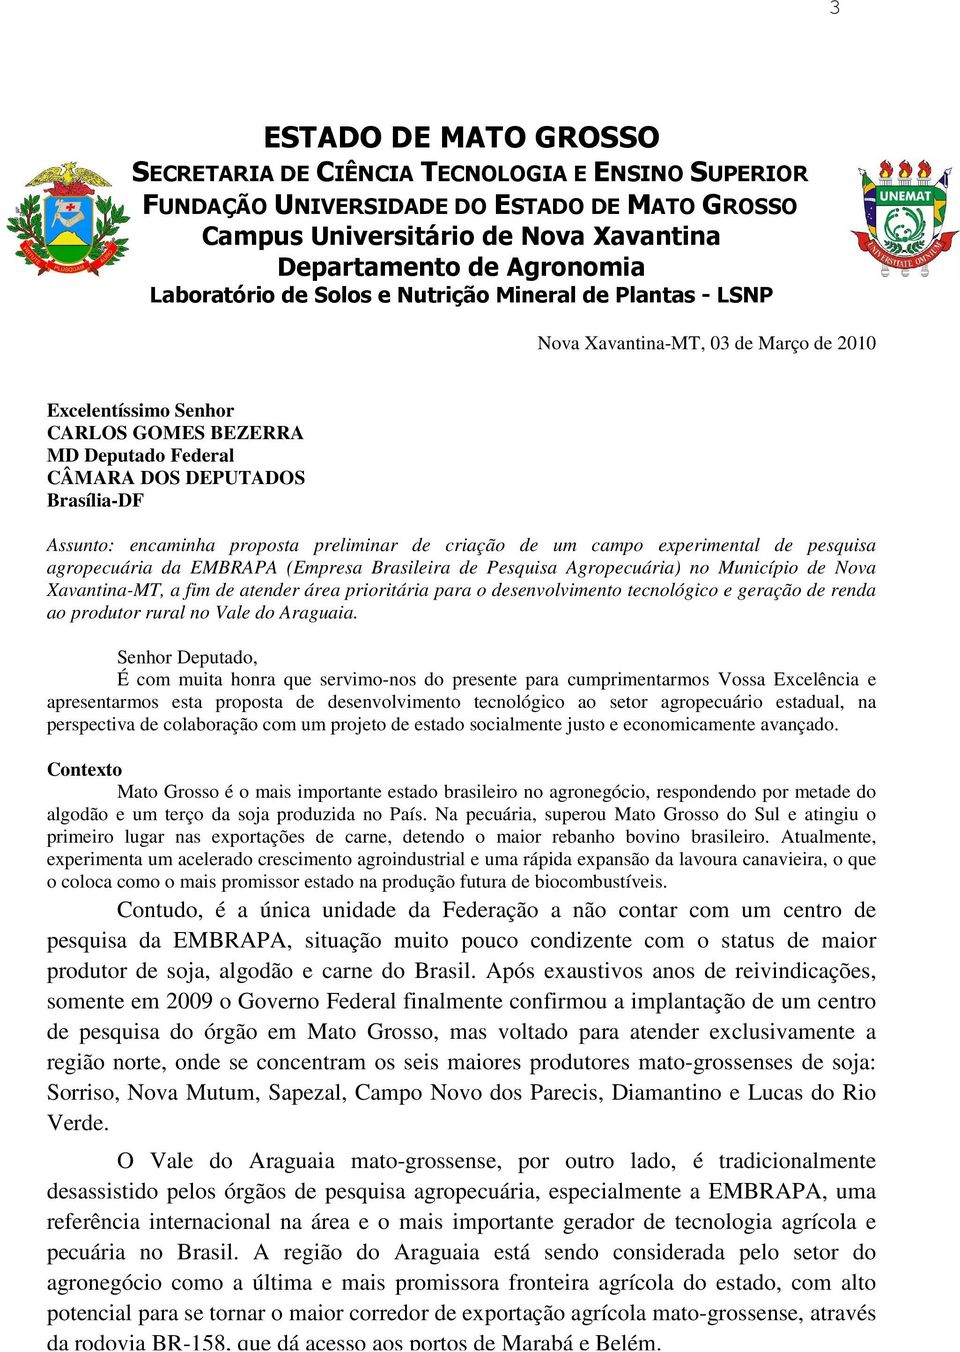 proposta preliminar de criação de um campo experimental de pesquisa agropecuária da EMBRAPA (Empresa Brasileira de Pesquisa Agropecuária) no Município de Nova Xavantina-MT, a fim de atender área